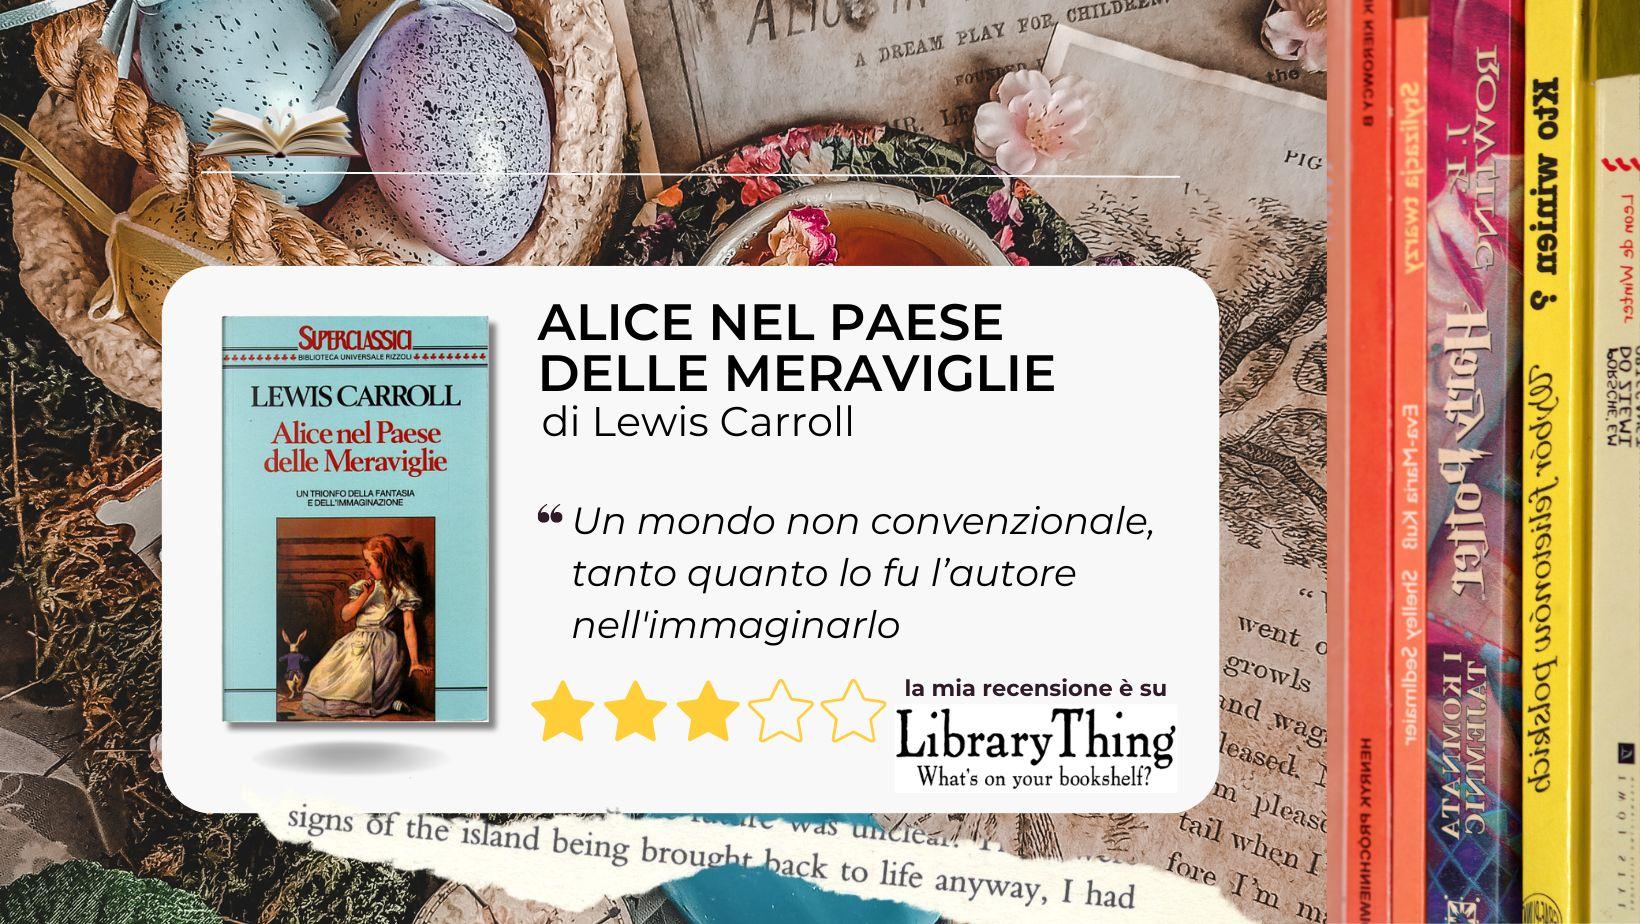 Alice nel paese delle meraviglie: il sogno strampalato e eterno firmato Lewis Carroll.